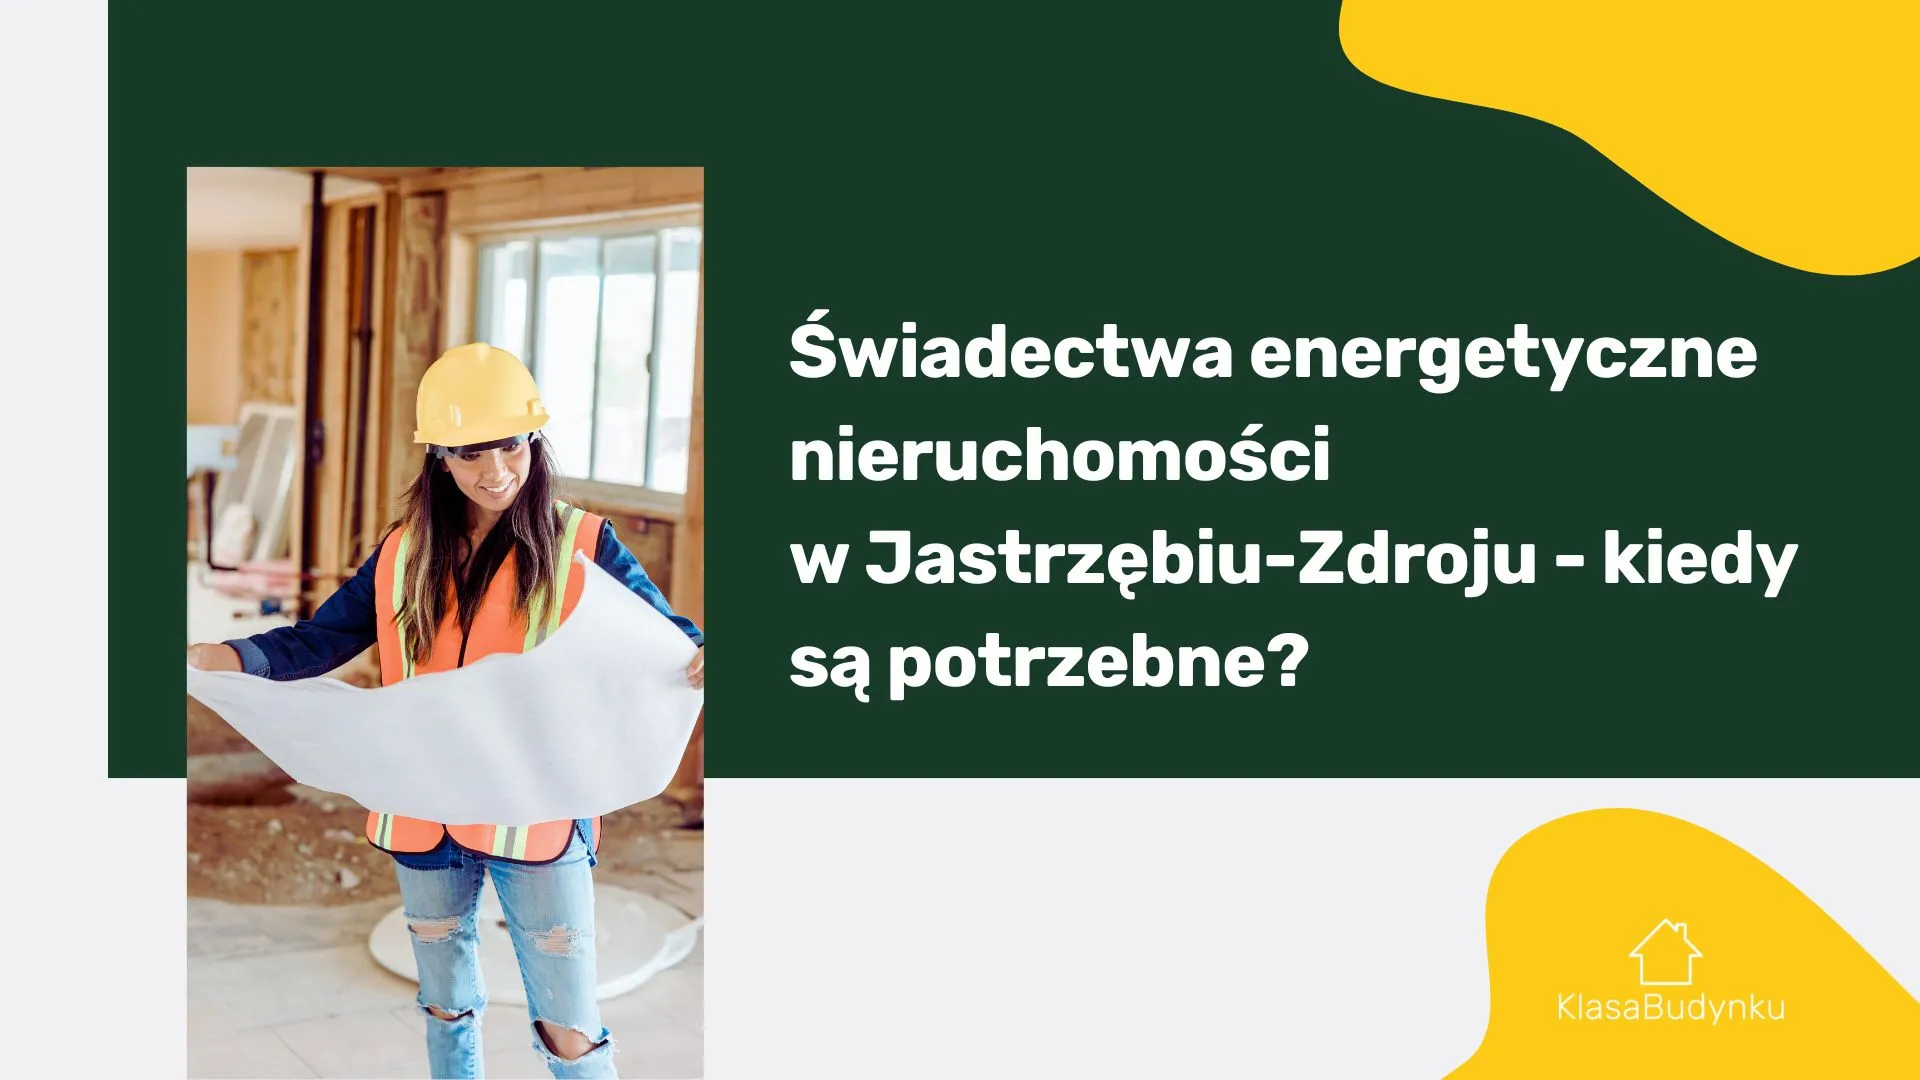 Świadectwa energetyczne nieruchomości w Jastrzębiu-Zdroju - kiedy są potrzebne?